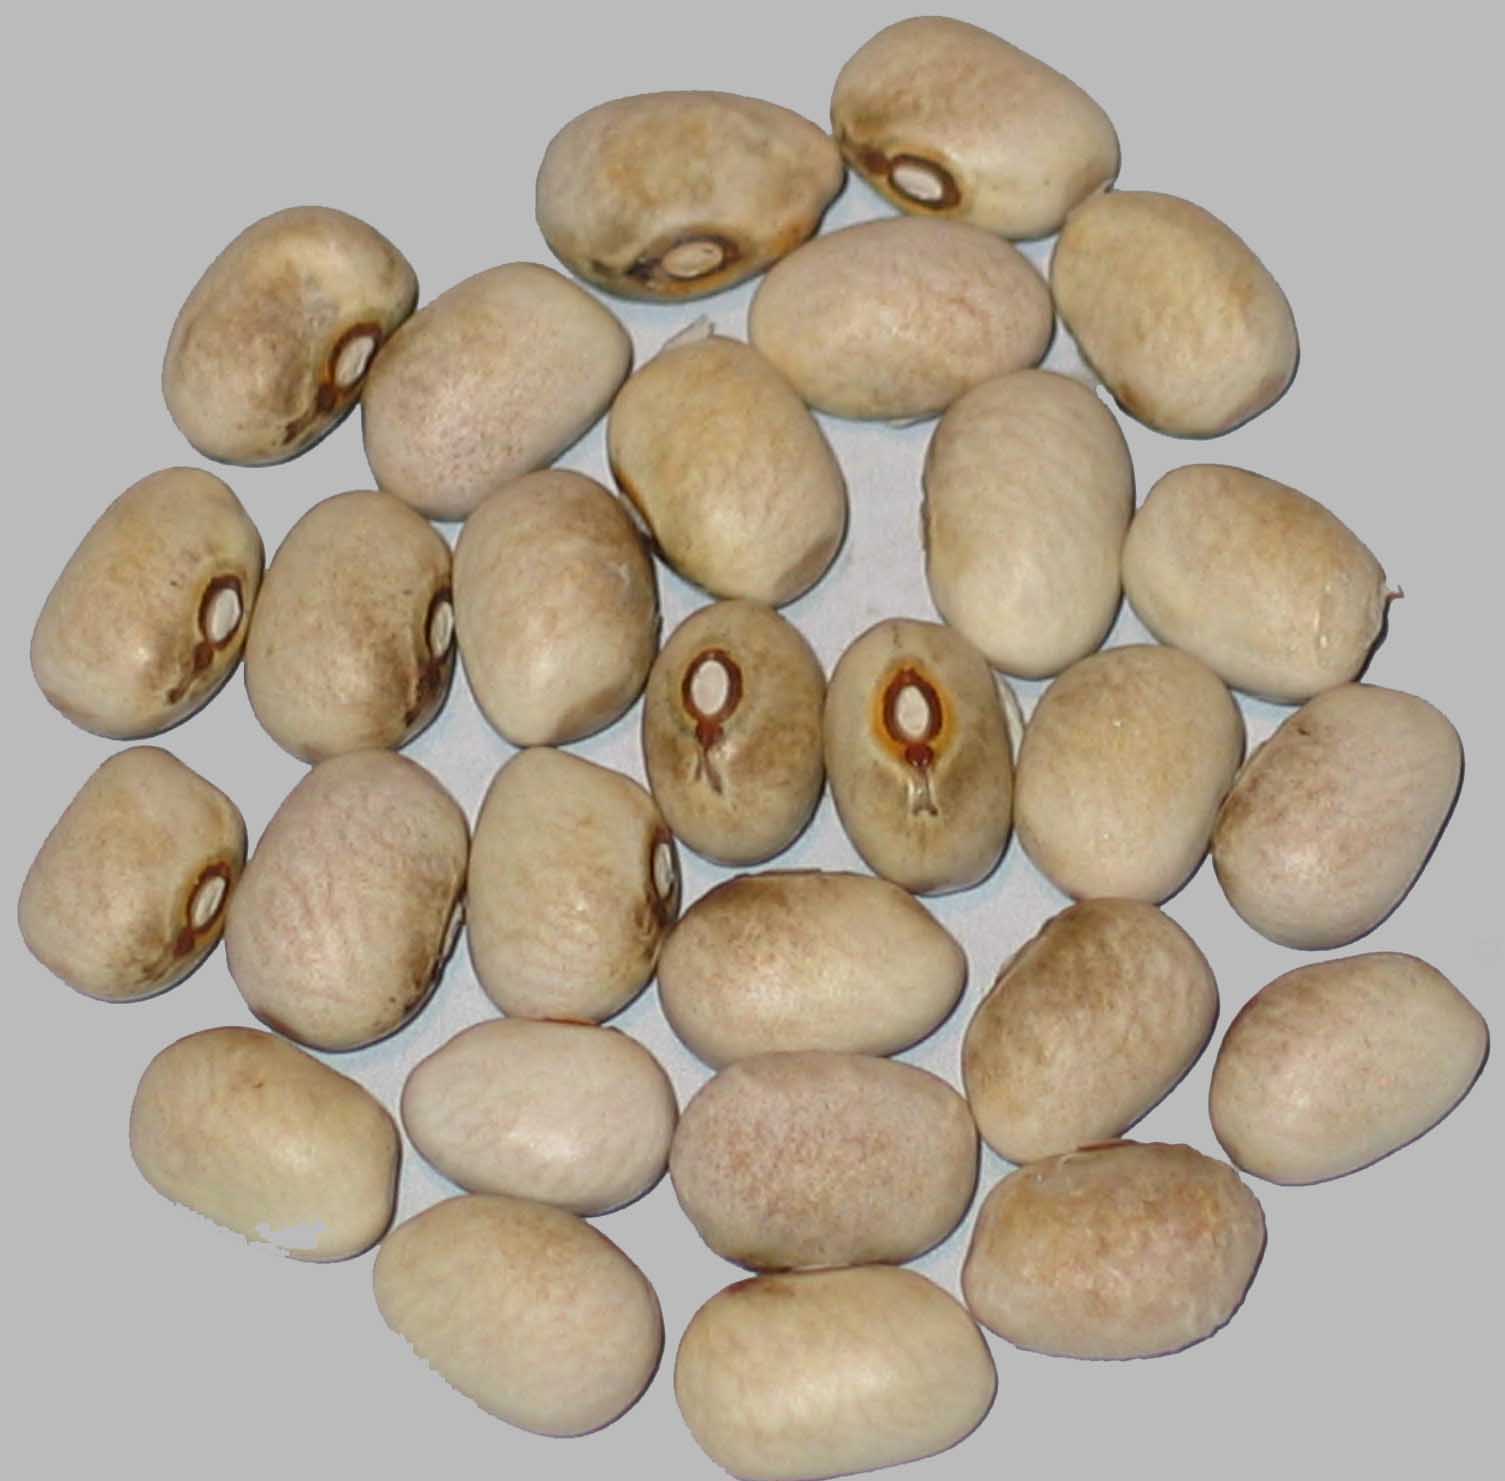 image of Brooten beans